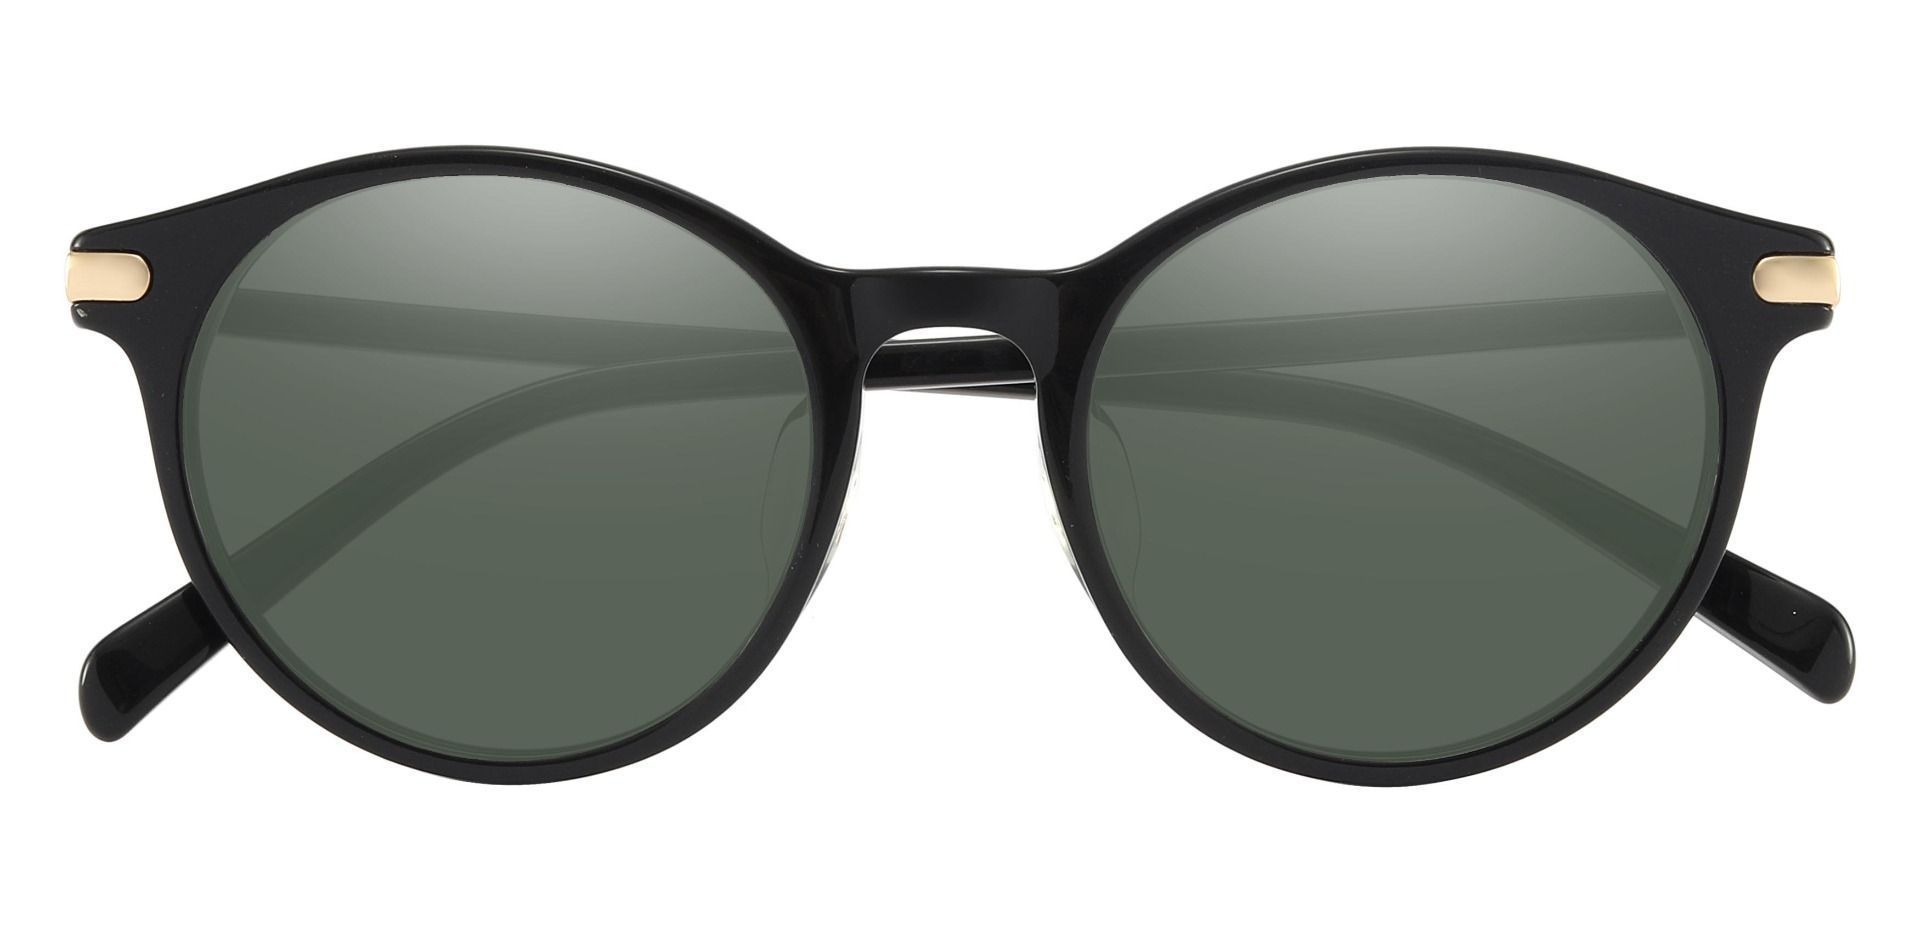 Barker Round Progressive Sunglasses - Black Frame With Green Lenses